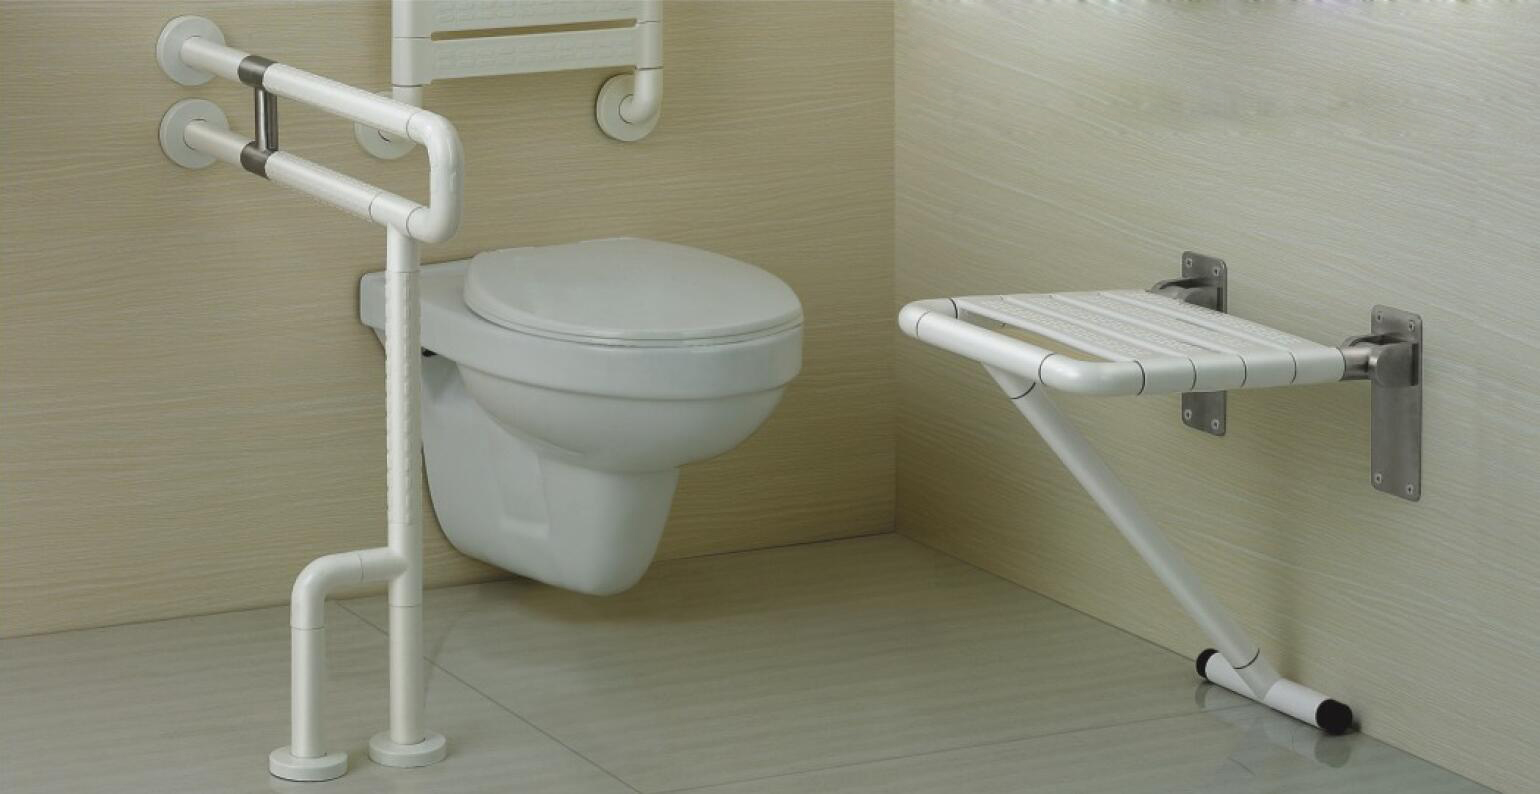 Jaké jsou důvody popularity závěsných toalet?